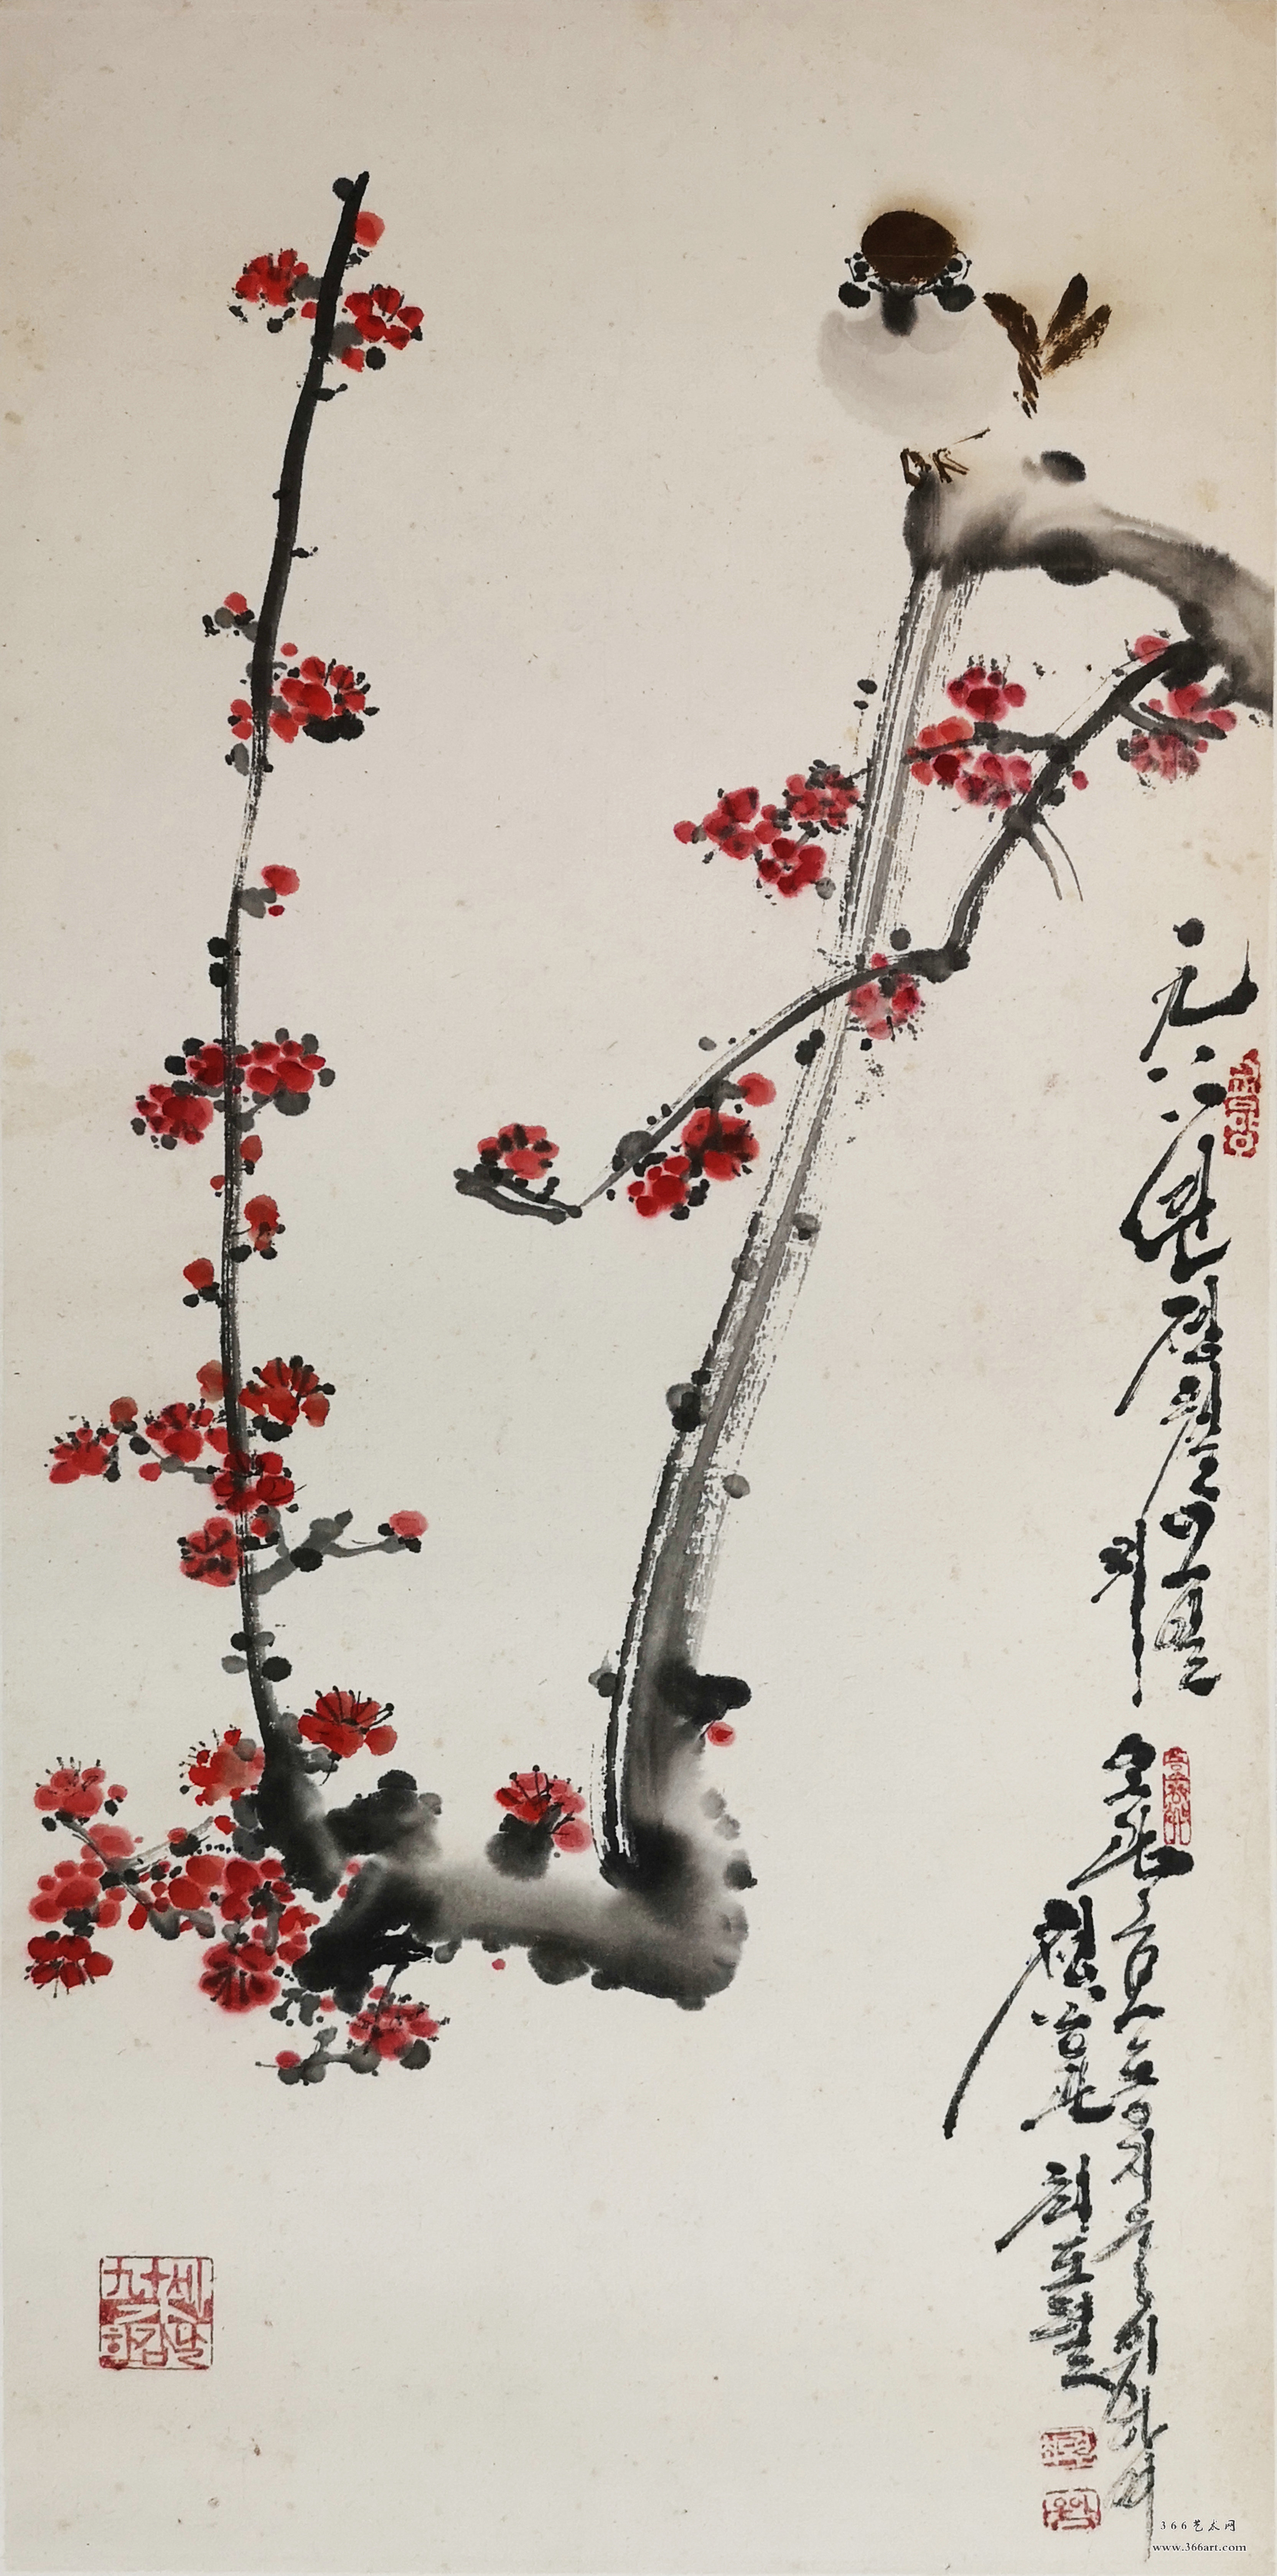 【朝鲜画】千昌原 红梅 1988年 26 x 55cm